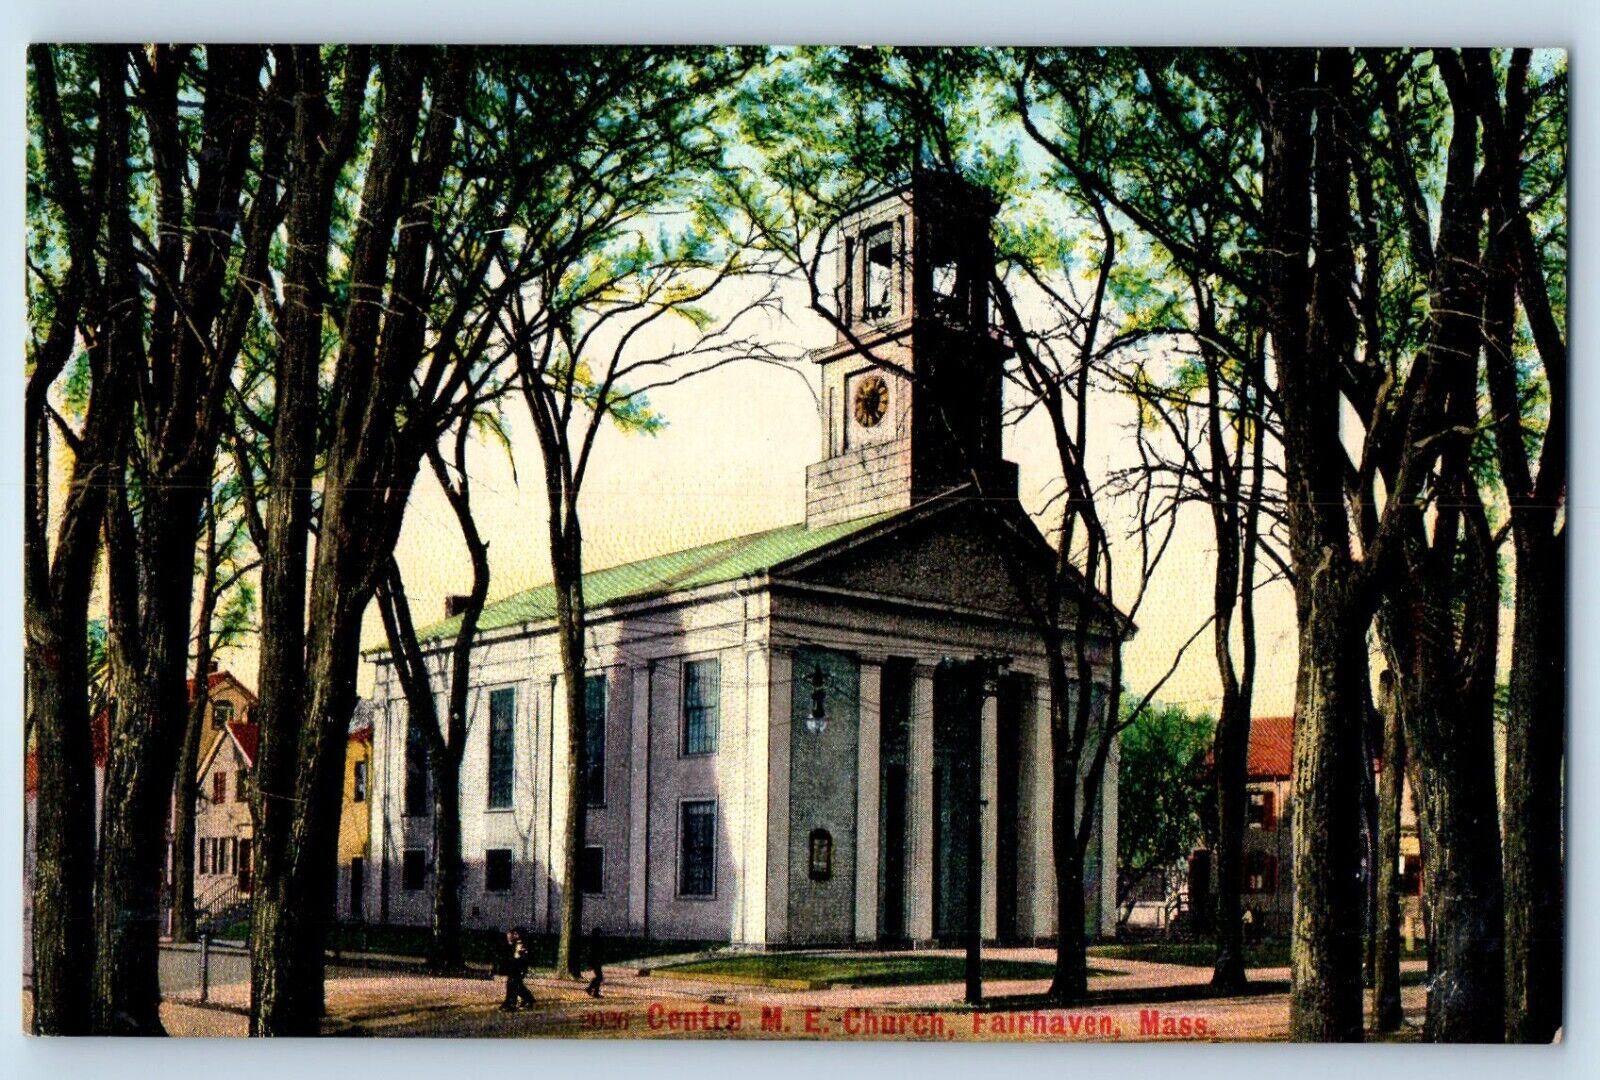 Fairhaven Massachusetts Postcard Centre ME Church Exterior Building 1905 Vintage